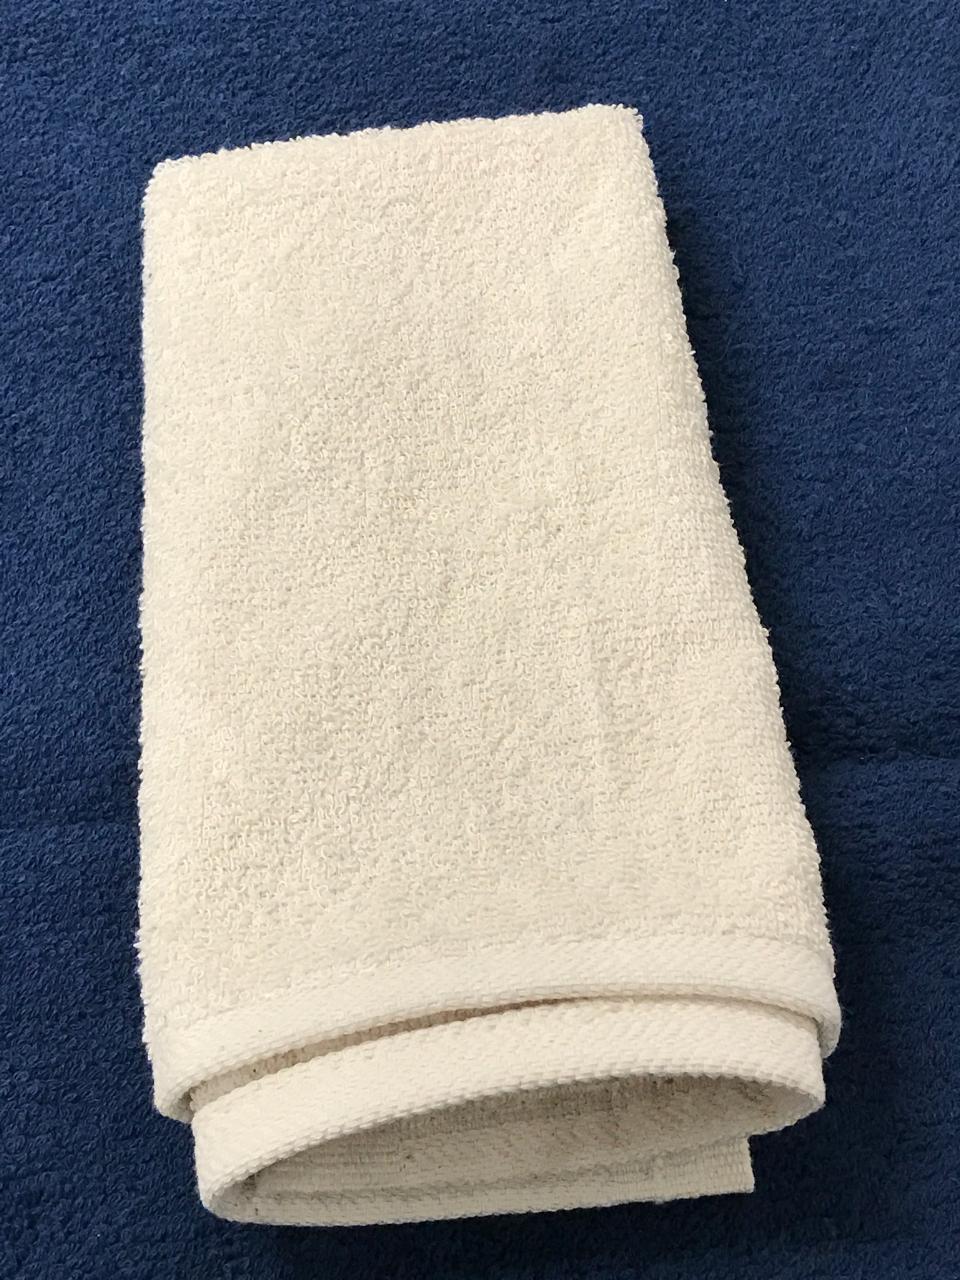 Hemmed Fingertip Towels